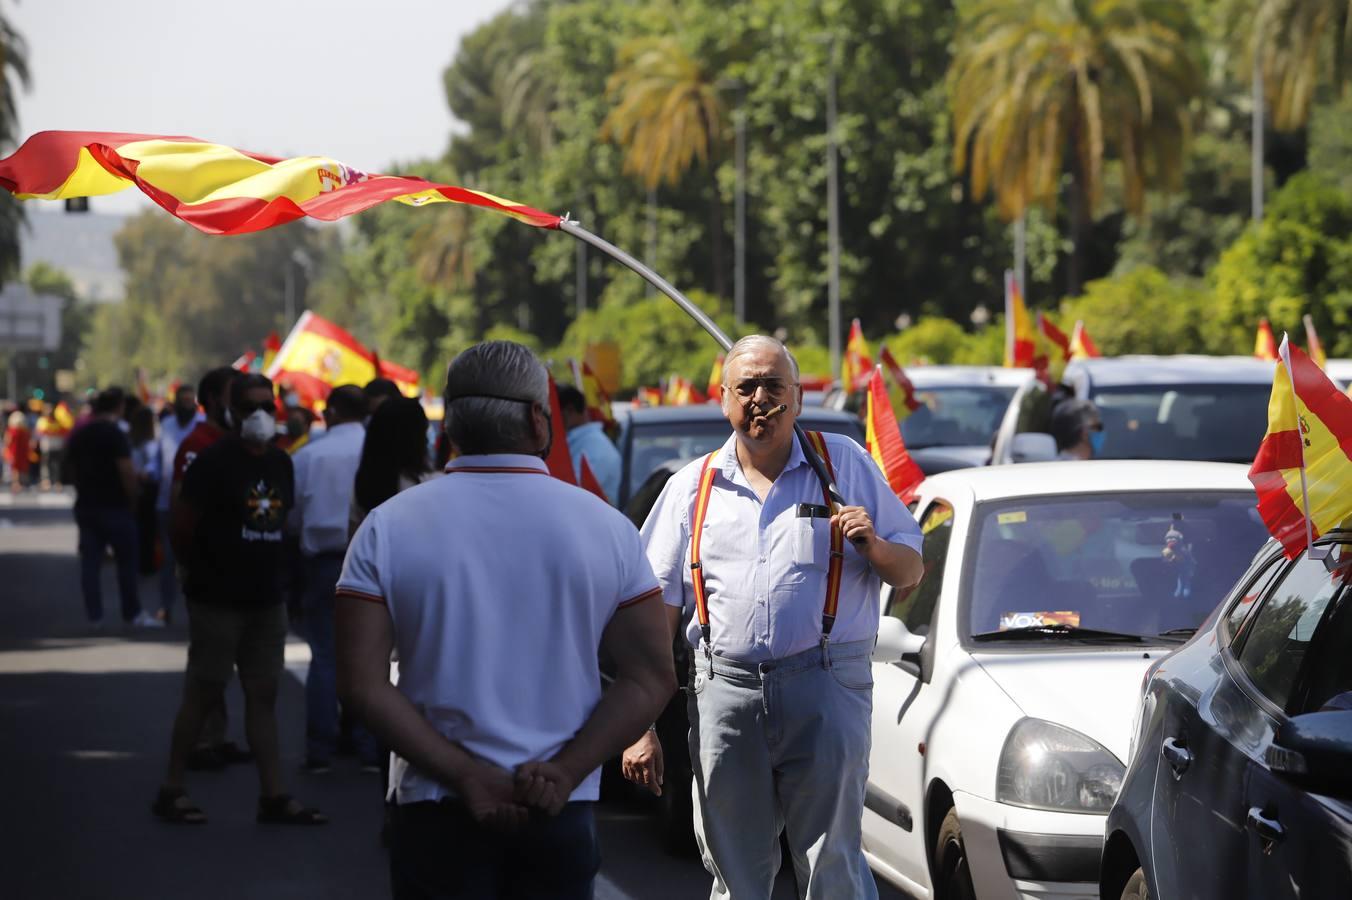 La marcha de Vox | Unos 2.500 coches recorren Córdoba contra el Gobierno de Sánchez